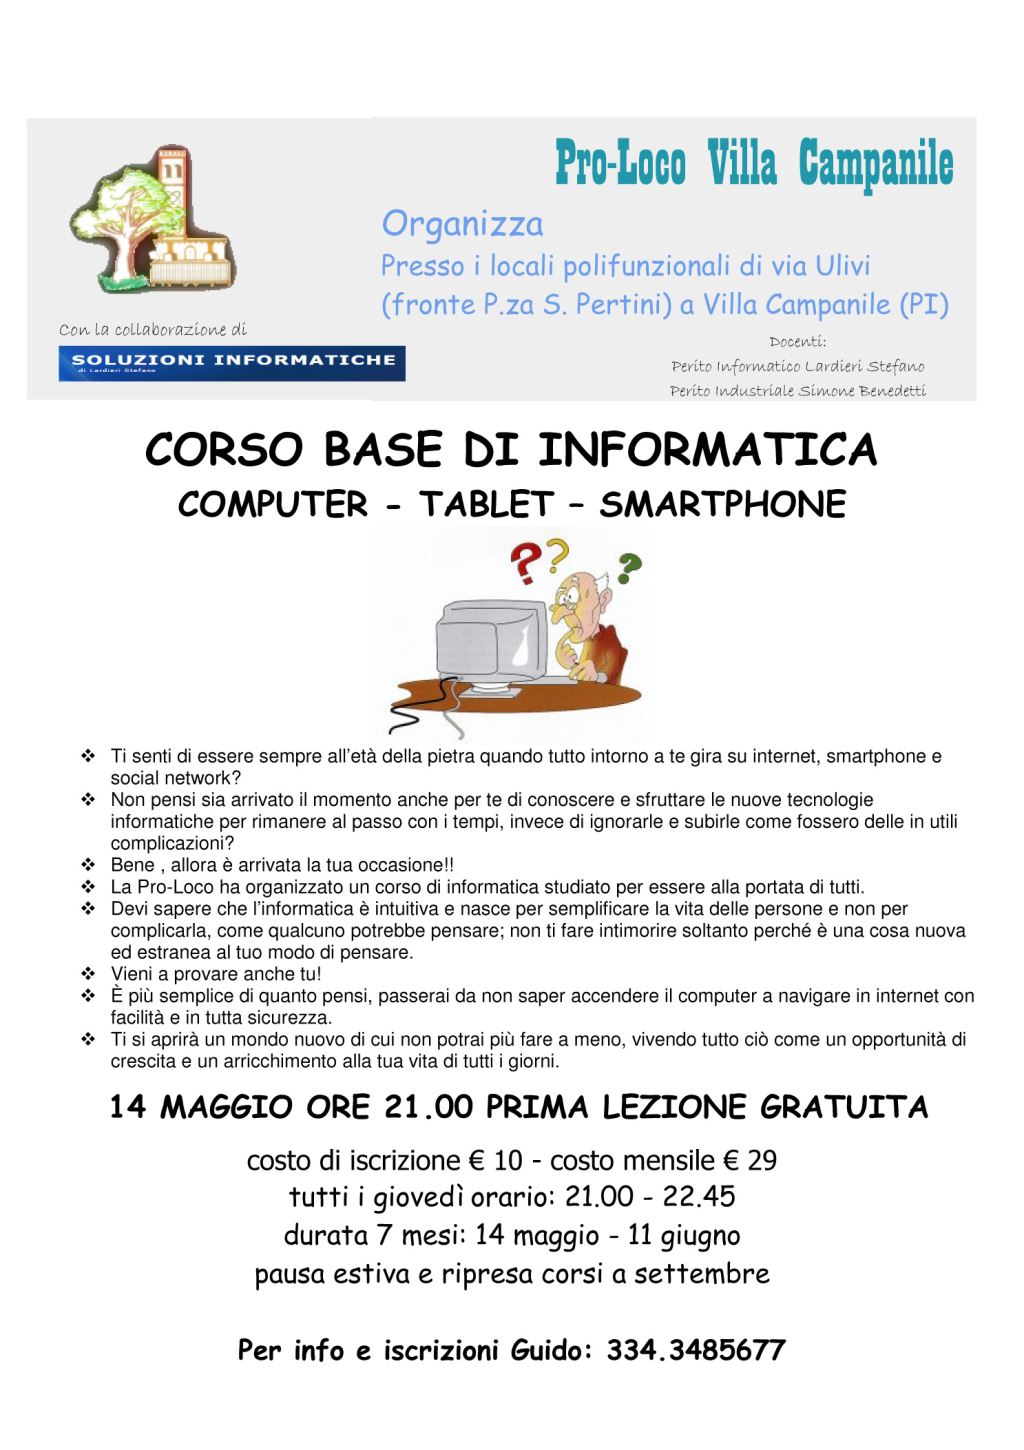 CorsoBaseInformatica1